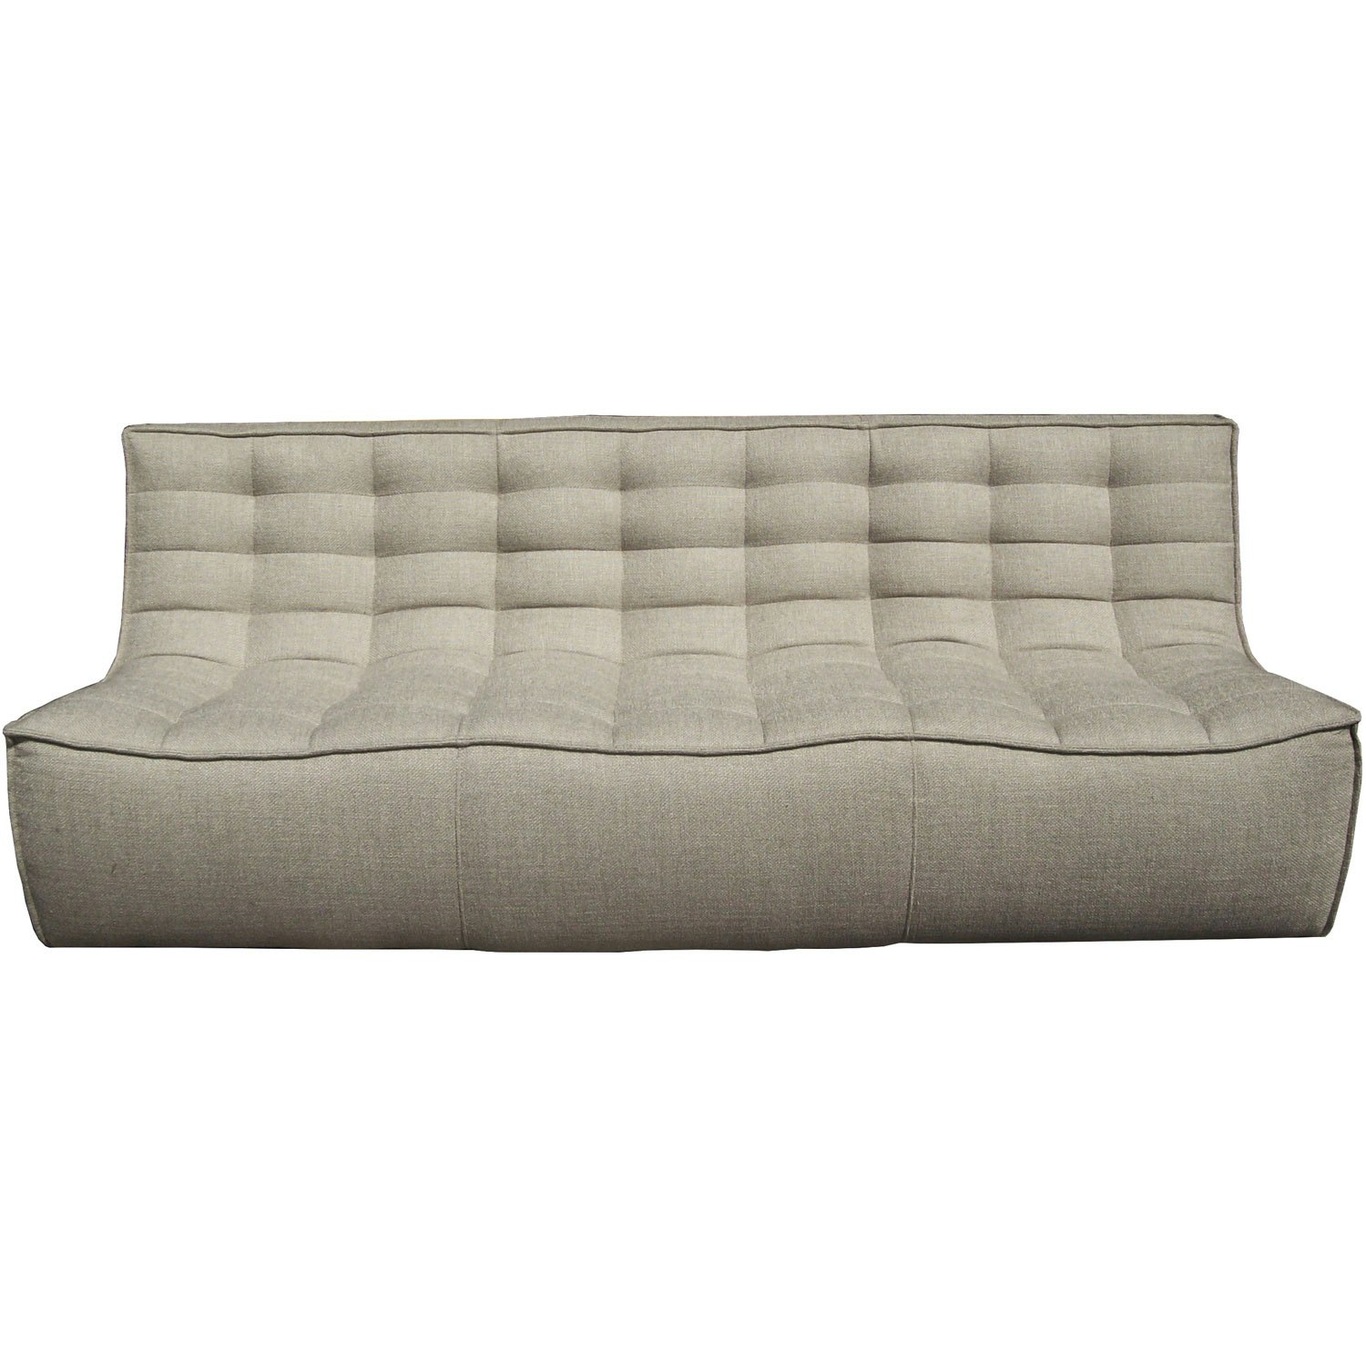 N701 Sofa, Beige 3-Seater